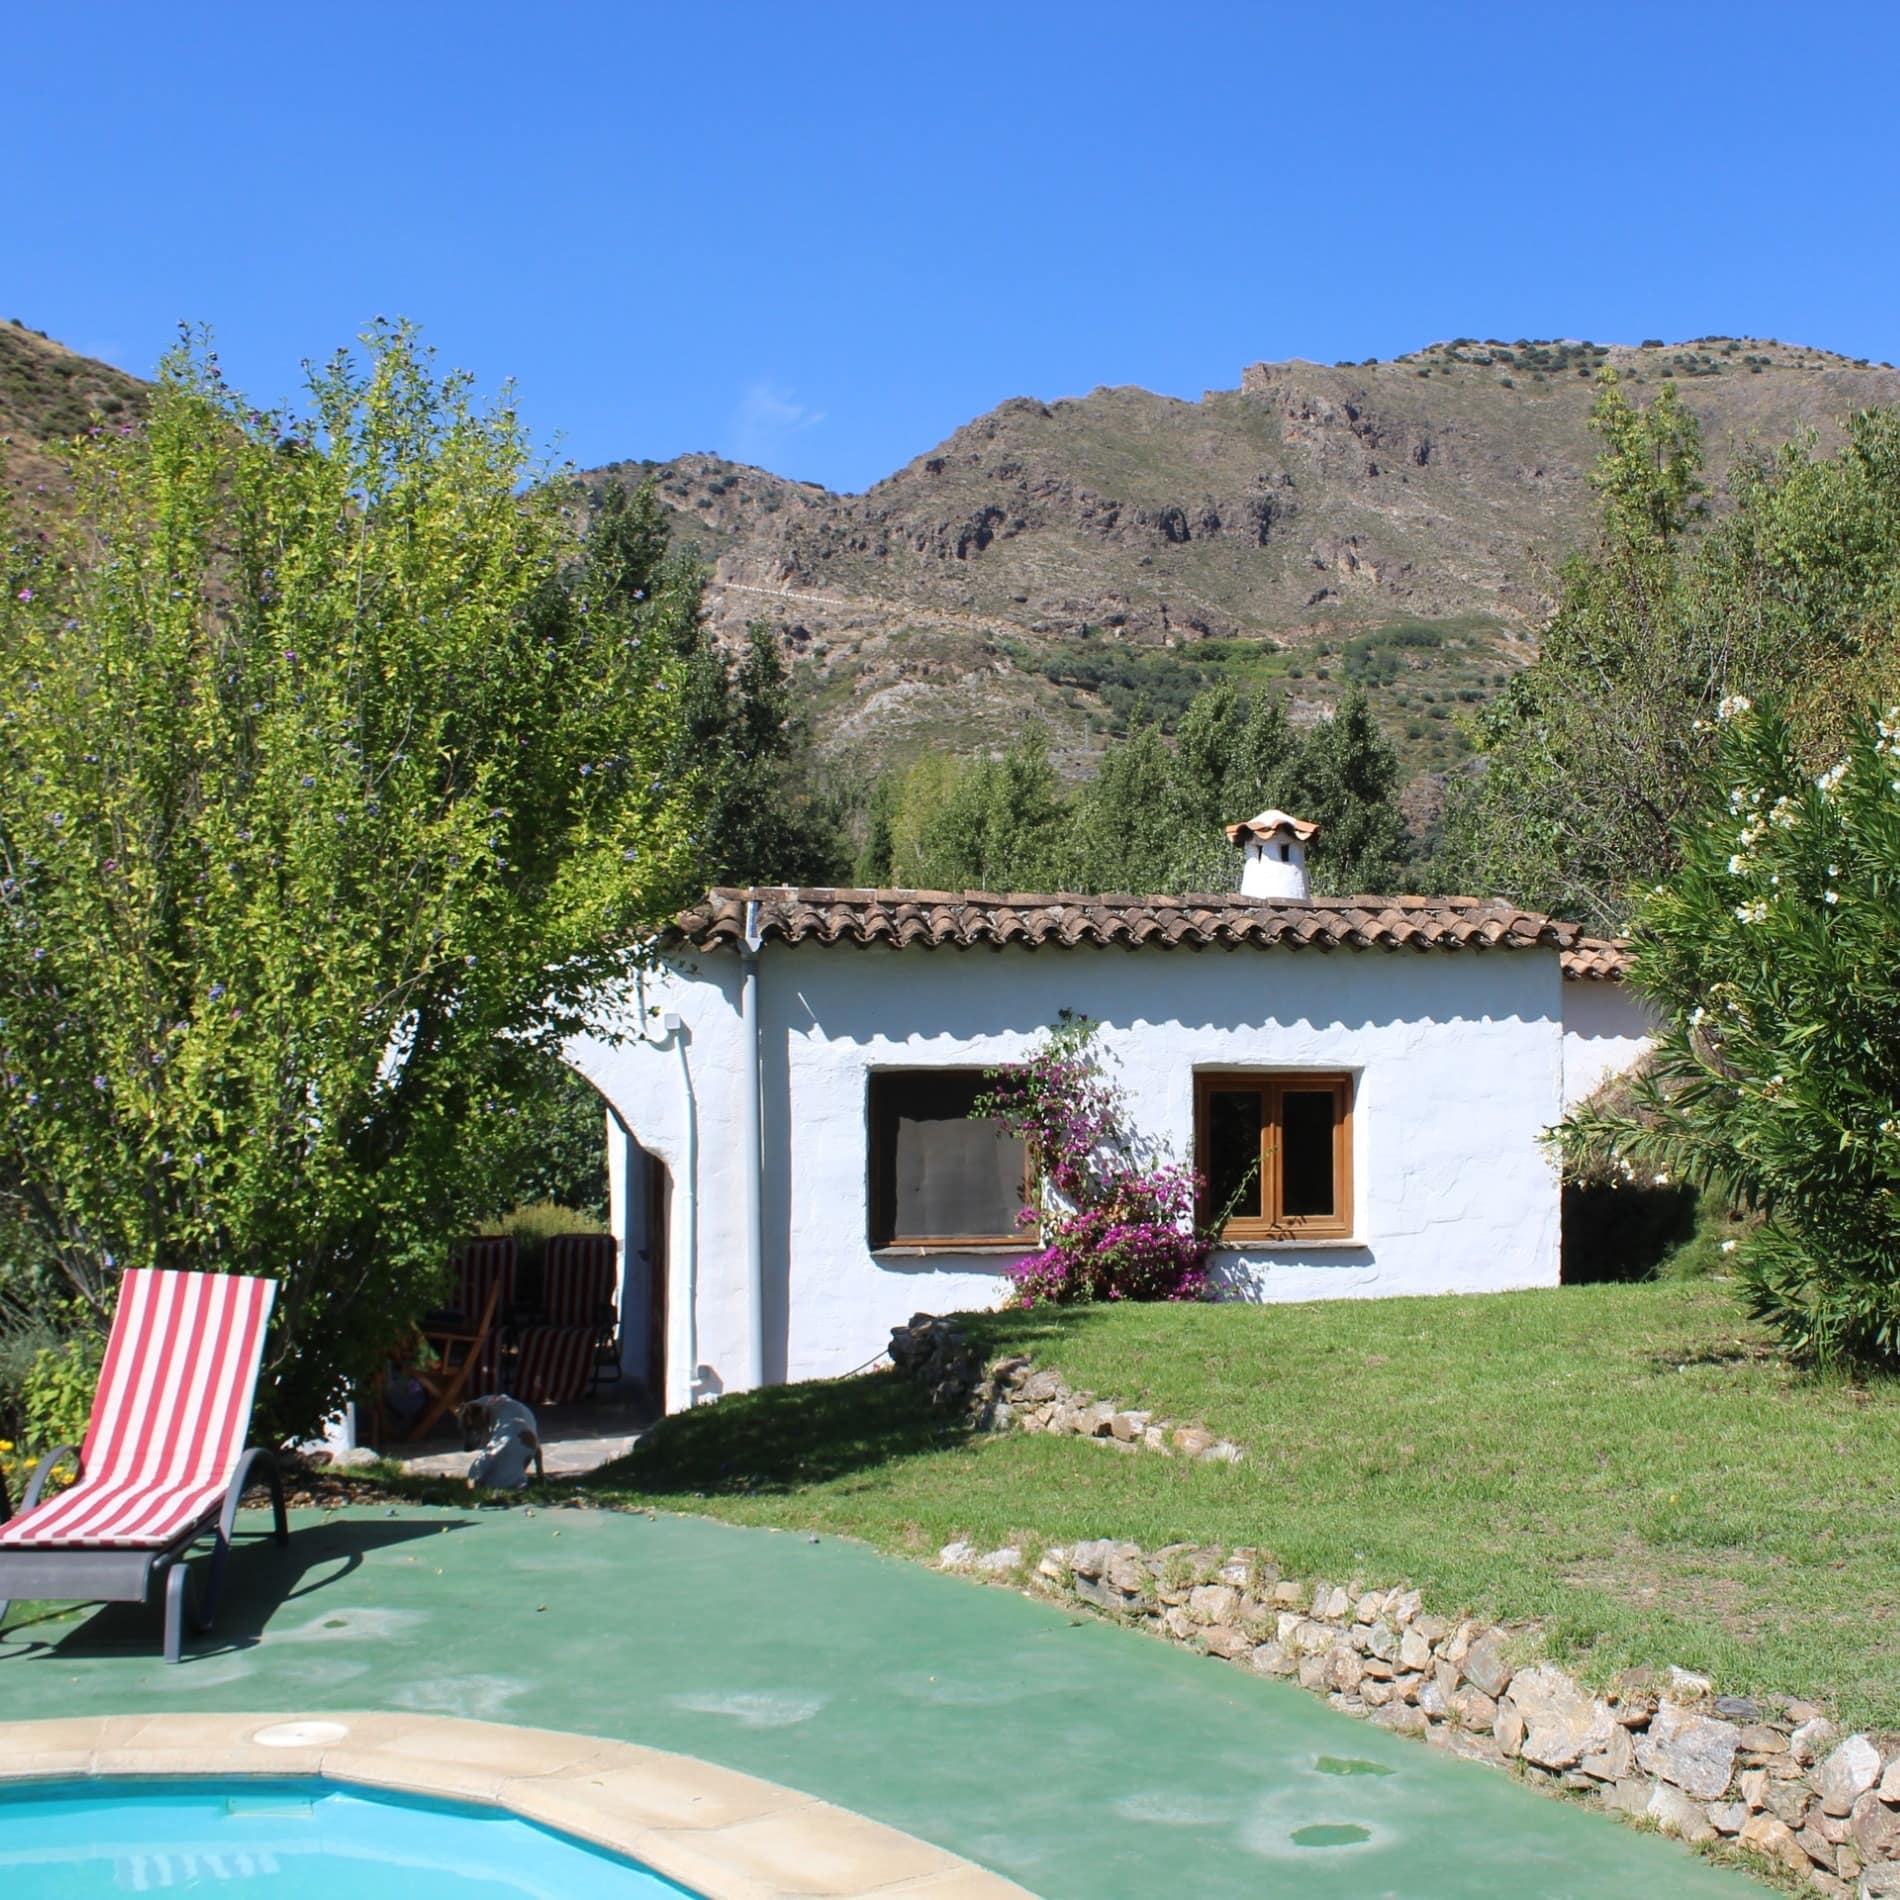 Casa blanca de un solo piso con jardín y piscina rodeada de vegetación y montañas